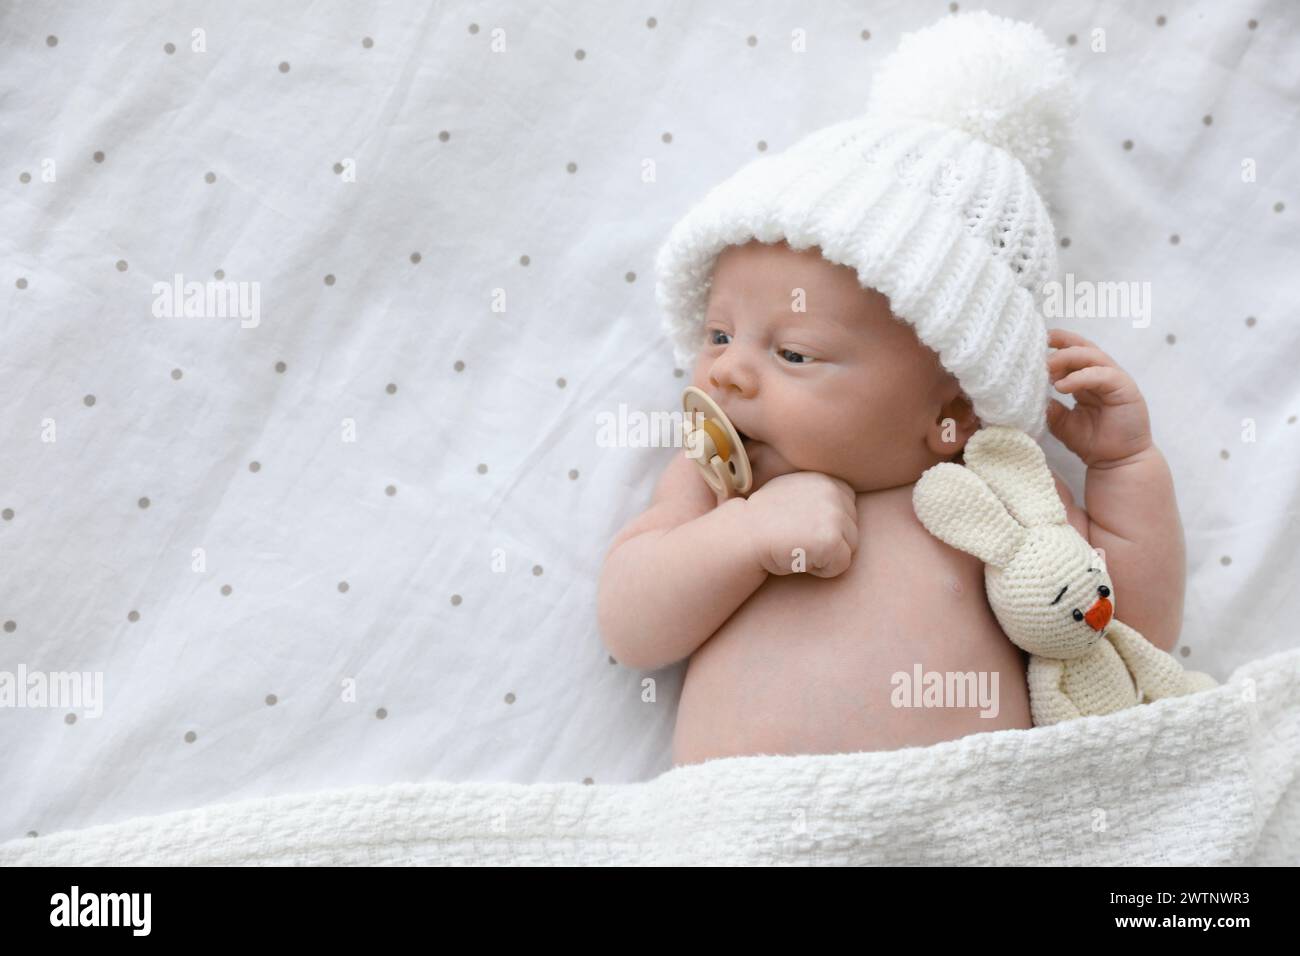 Bambino neonato carino in cappello bianco lavorato a maglia con giocattolo sdraiato sul letto, vista dall'alto. Spazio per il testo Foto Stock